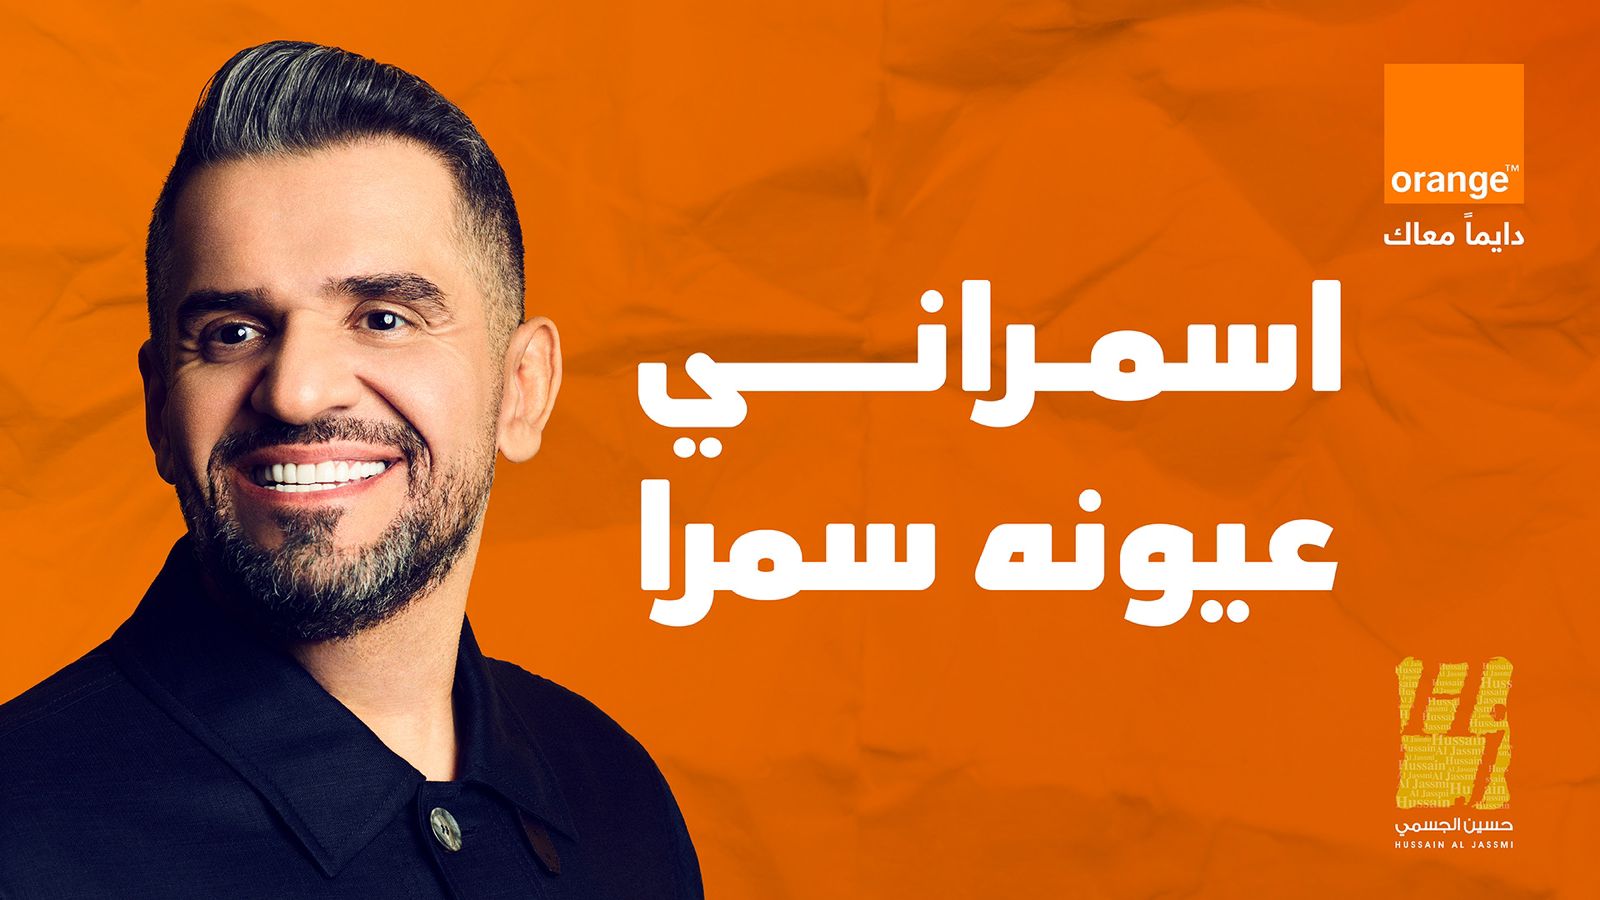 حسين الجسمي يلمس مشاعر المصريين بـ"اسمراني عيونه سمرا"